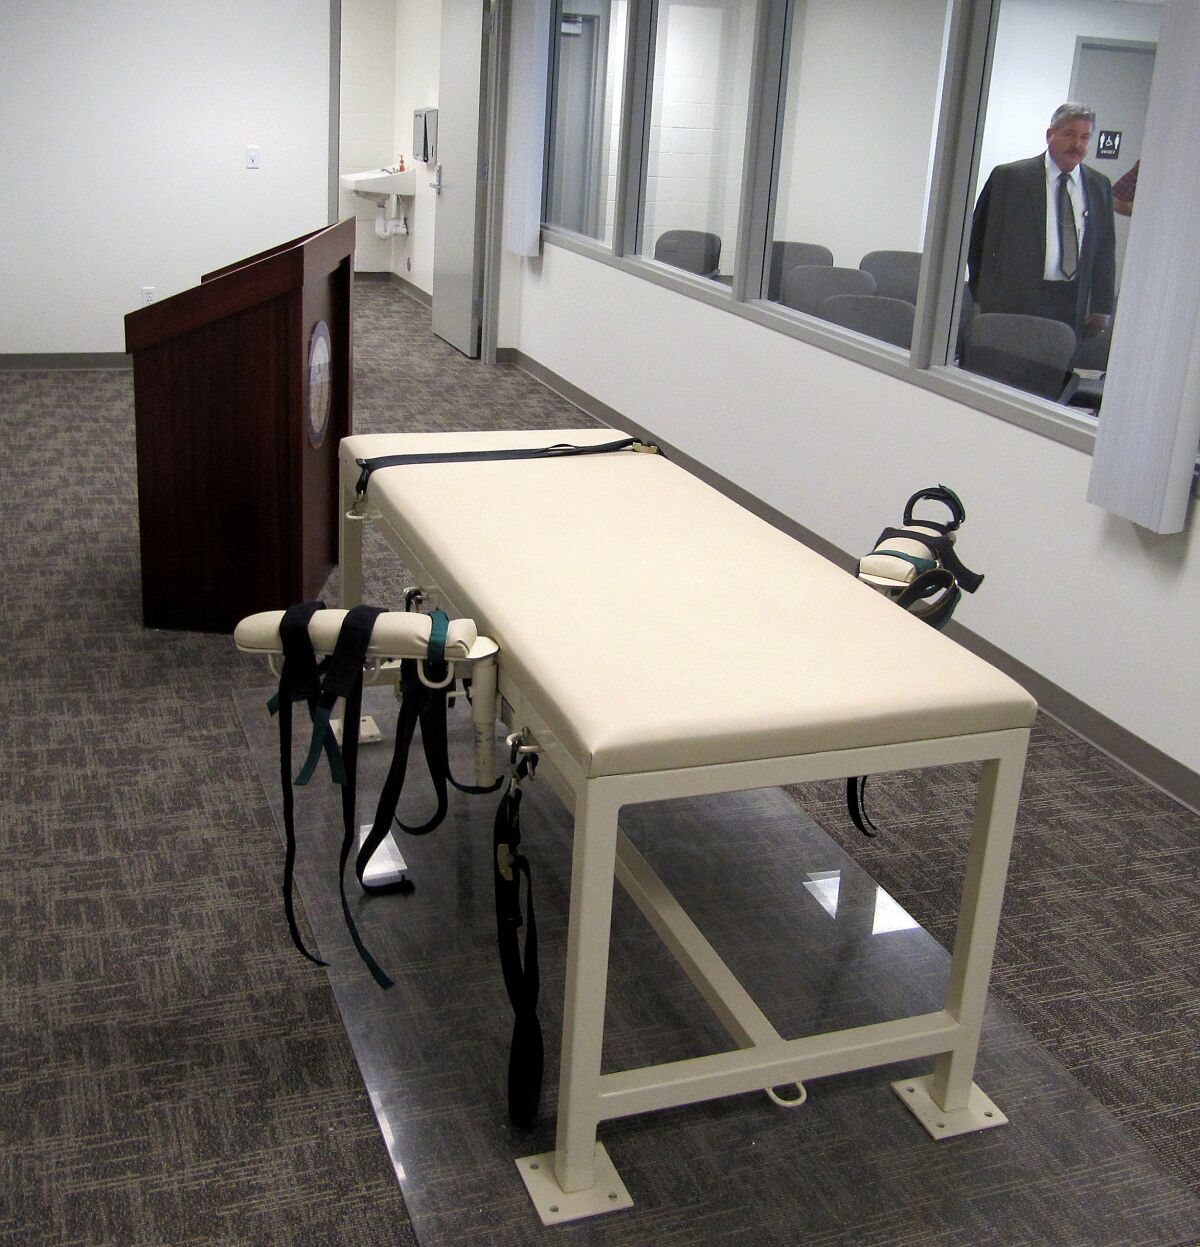 ARCHIVO - La cámara para ejecuciones en la institución de máxima seguridad de Idaho, en Boise, Idaho, el 20 de octubre de 2011. (AP Foto/Jessie L. Bonner, archivo)